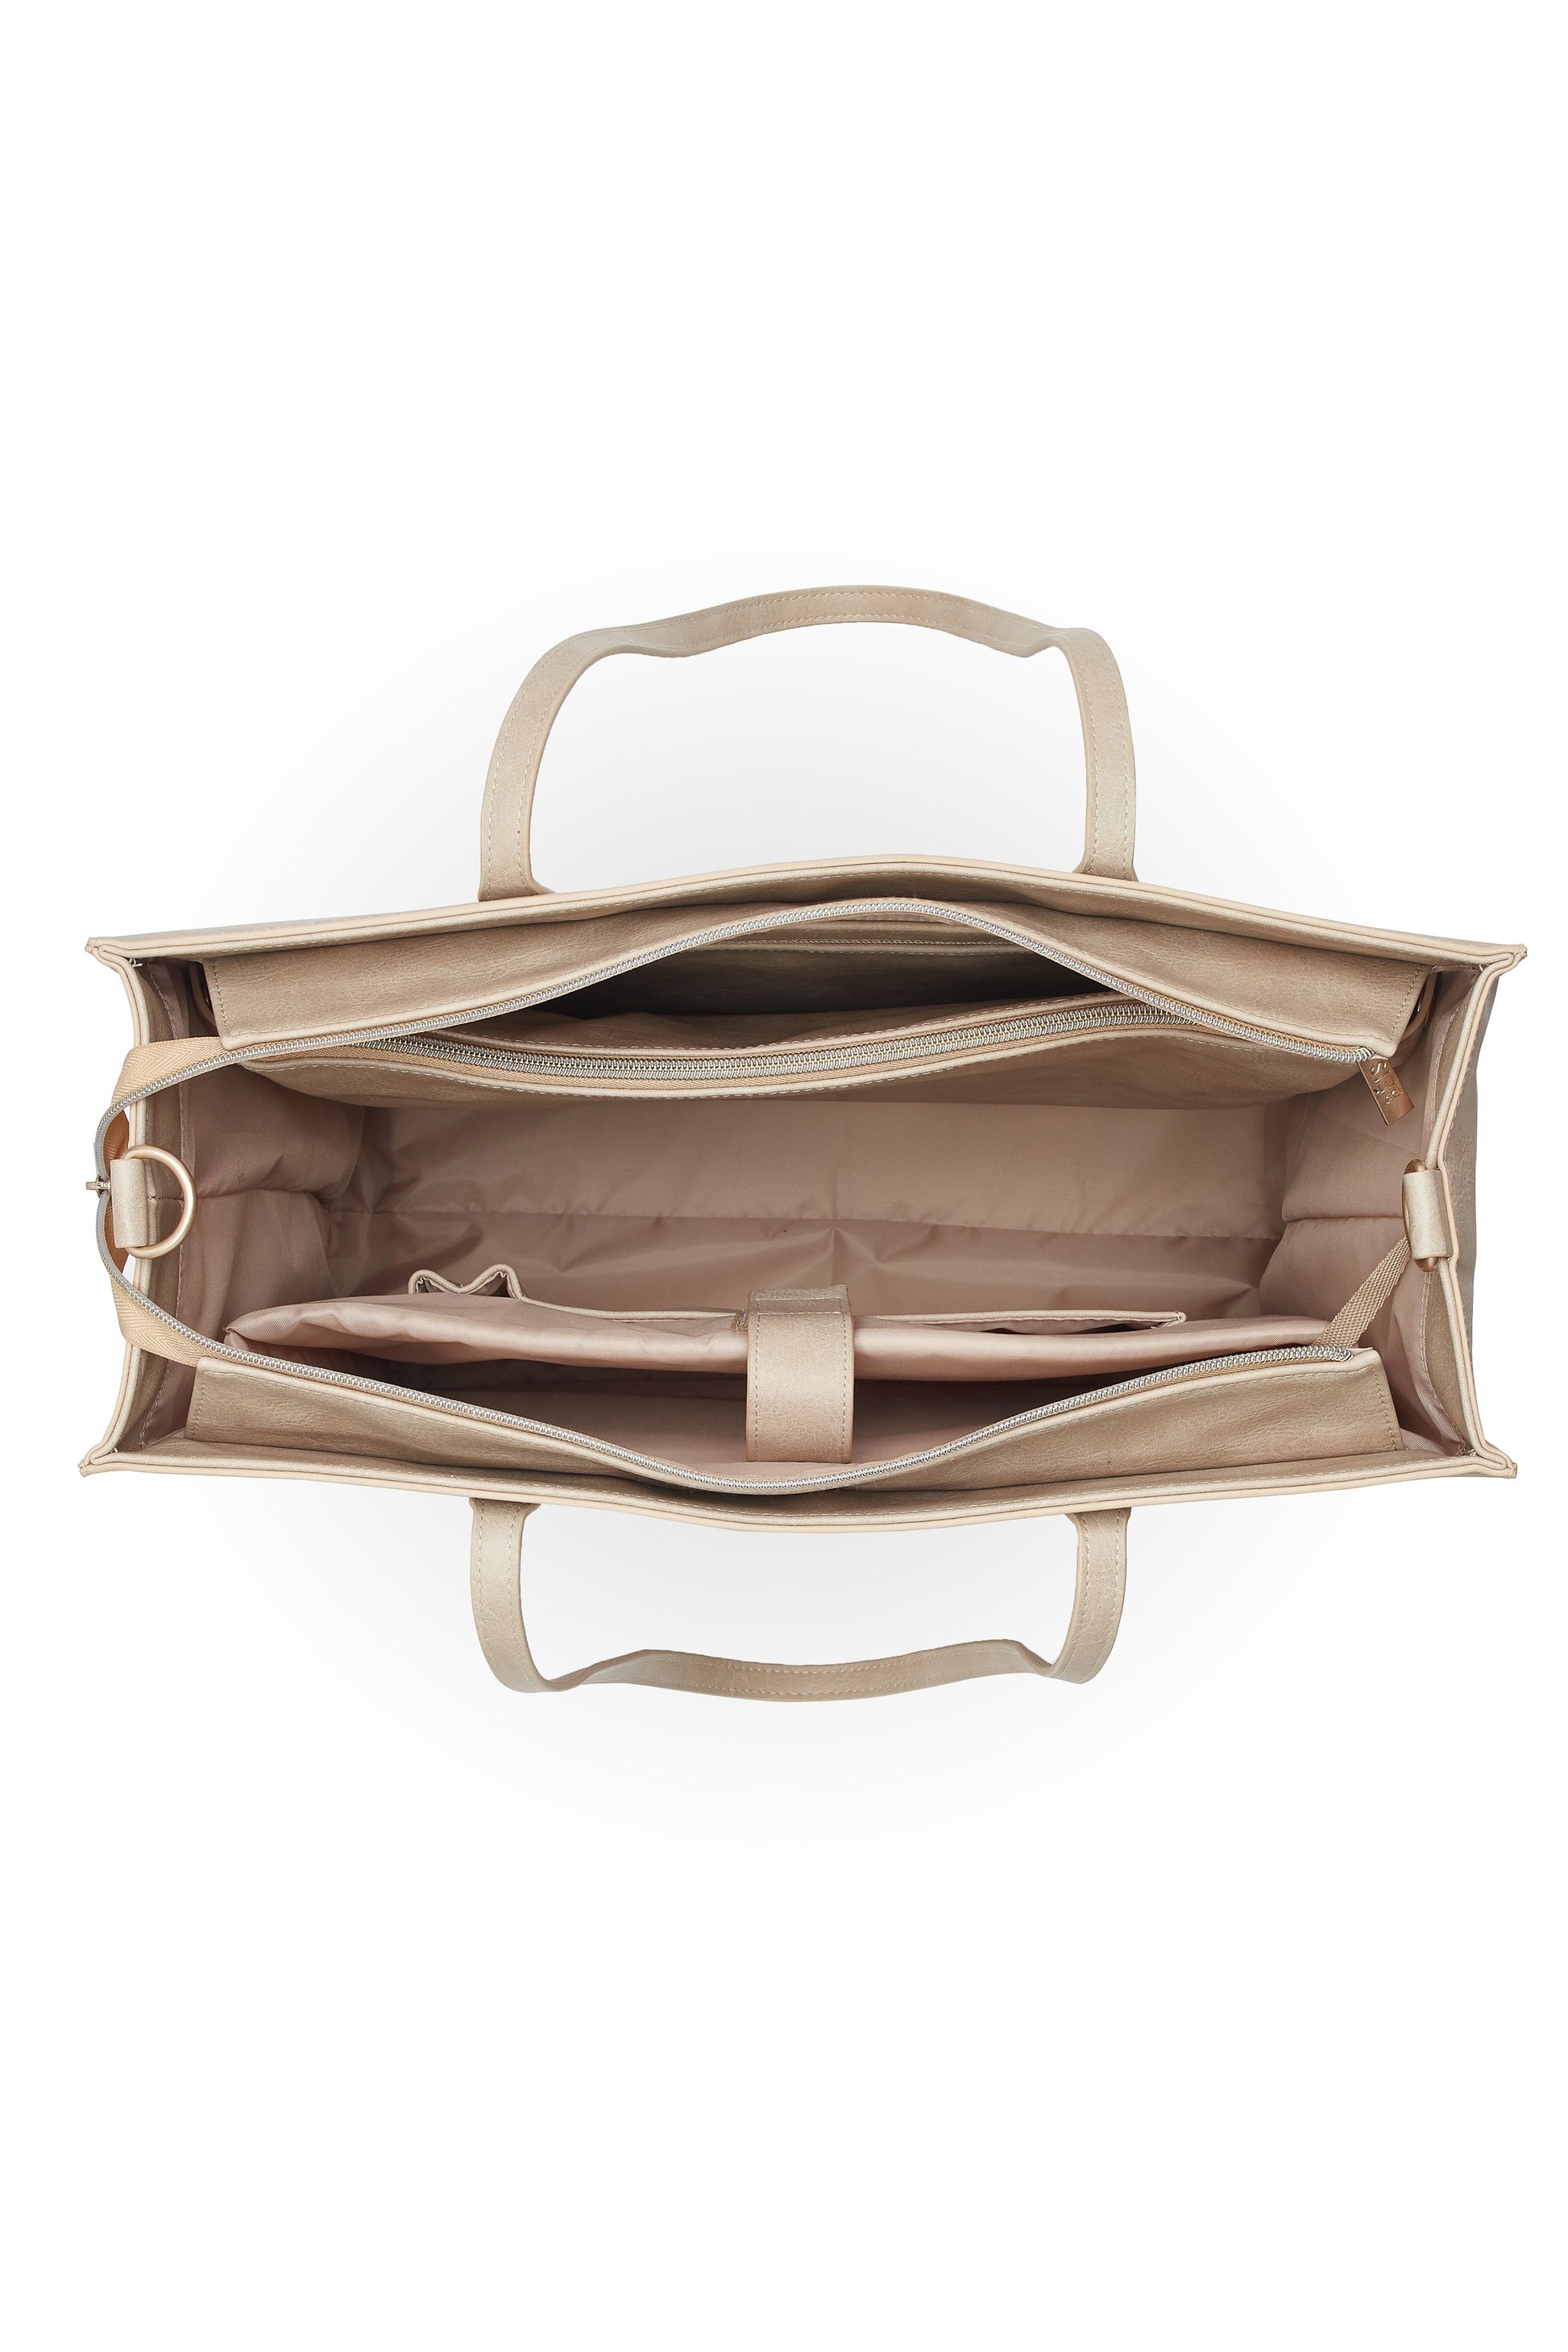 Radley Brown Leather Tote Shoulder Bag Tote Shopper / Work 